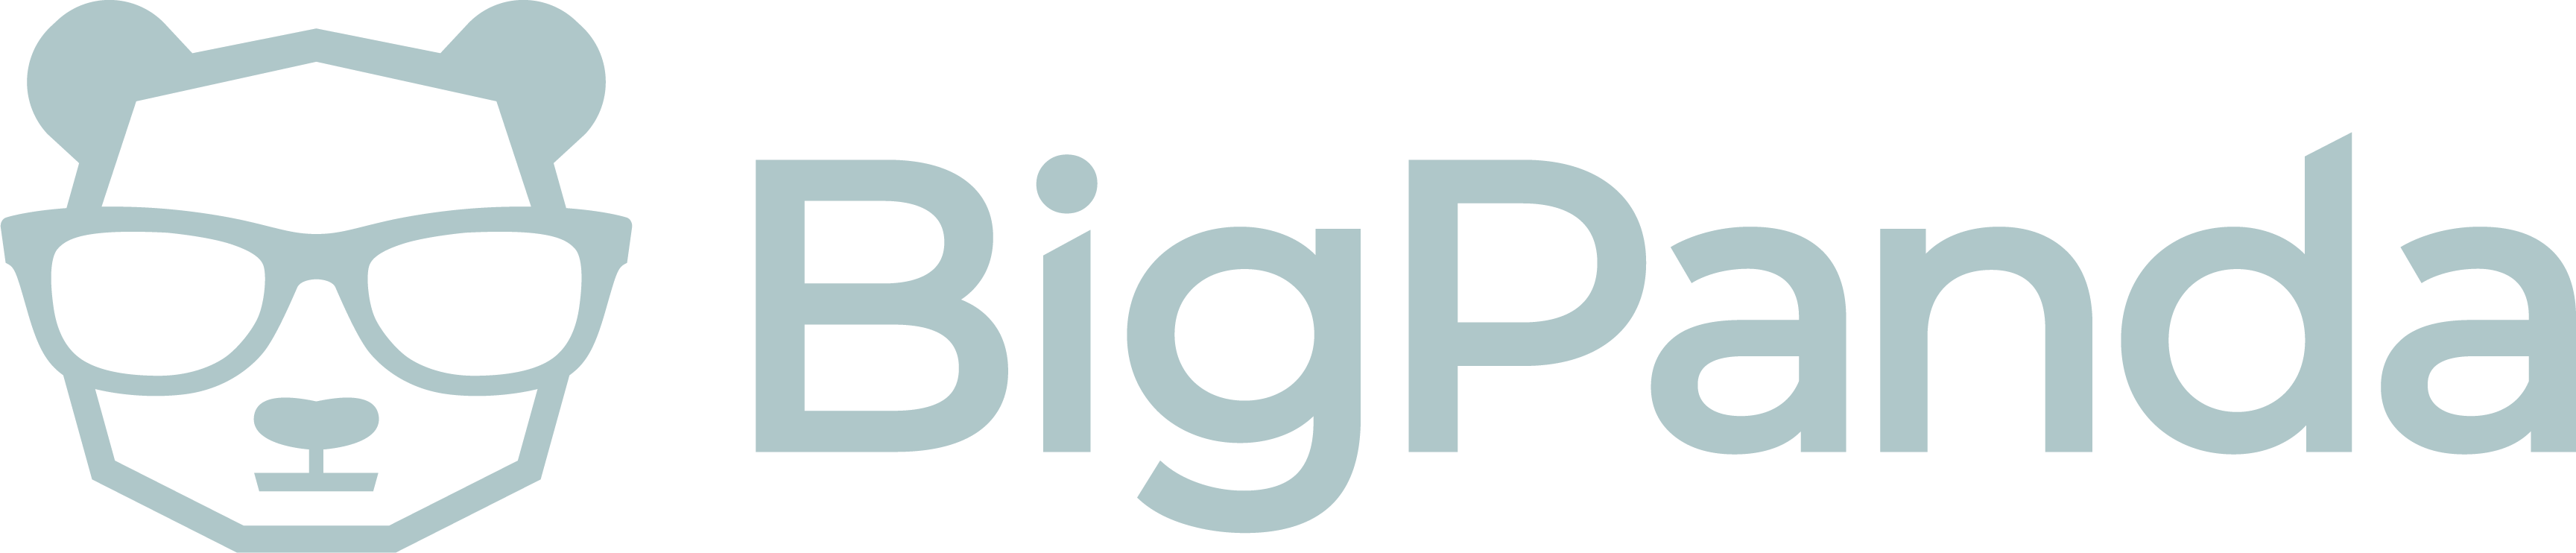 BigPanda.io Logo